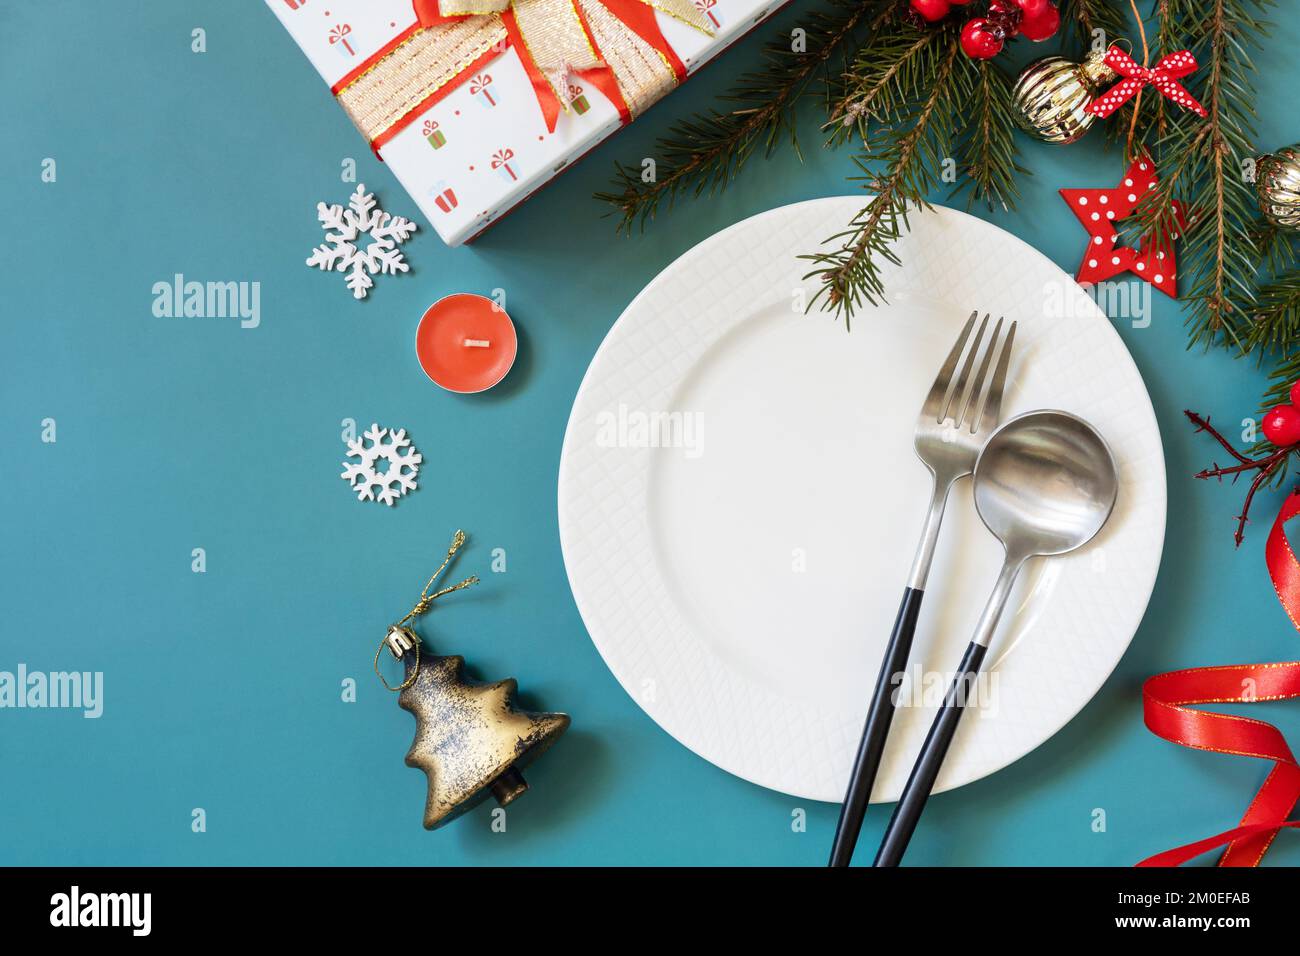 Plat de mise en place de table de Noël avec assiette, couverts, boîtes cadeaux et décorations de noël sur fond vert. Banque D'Images